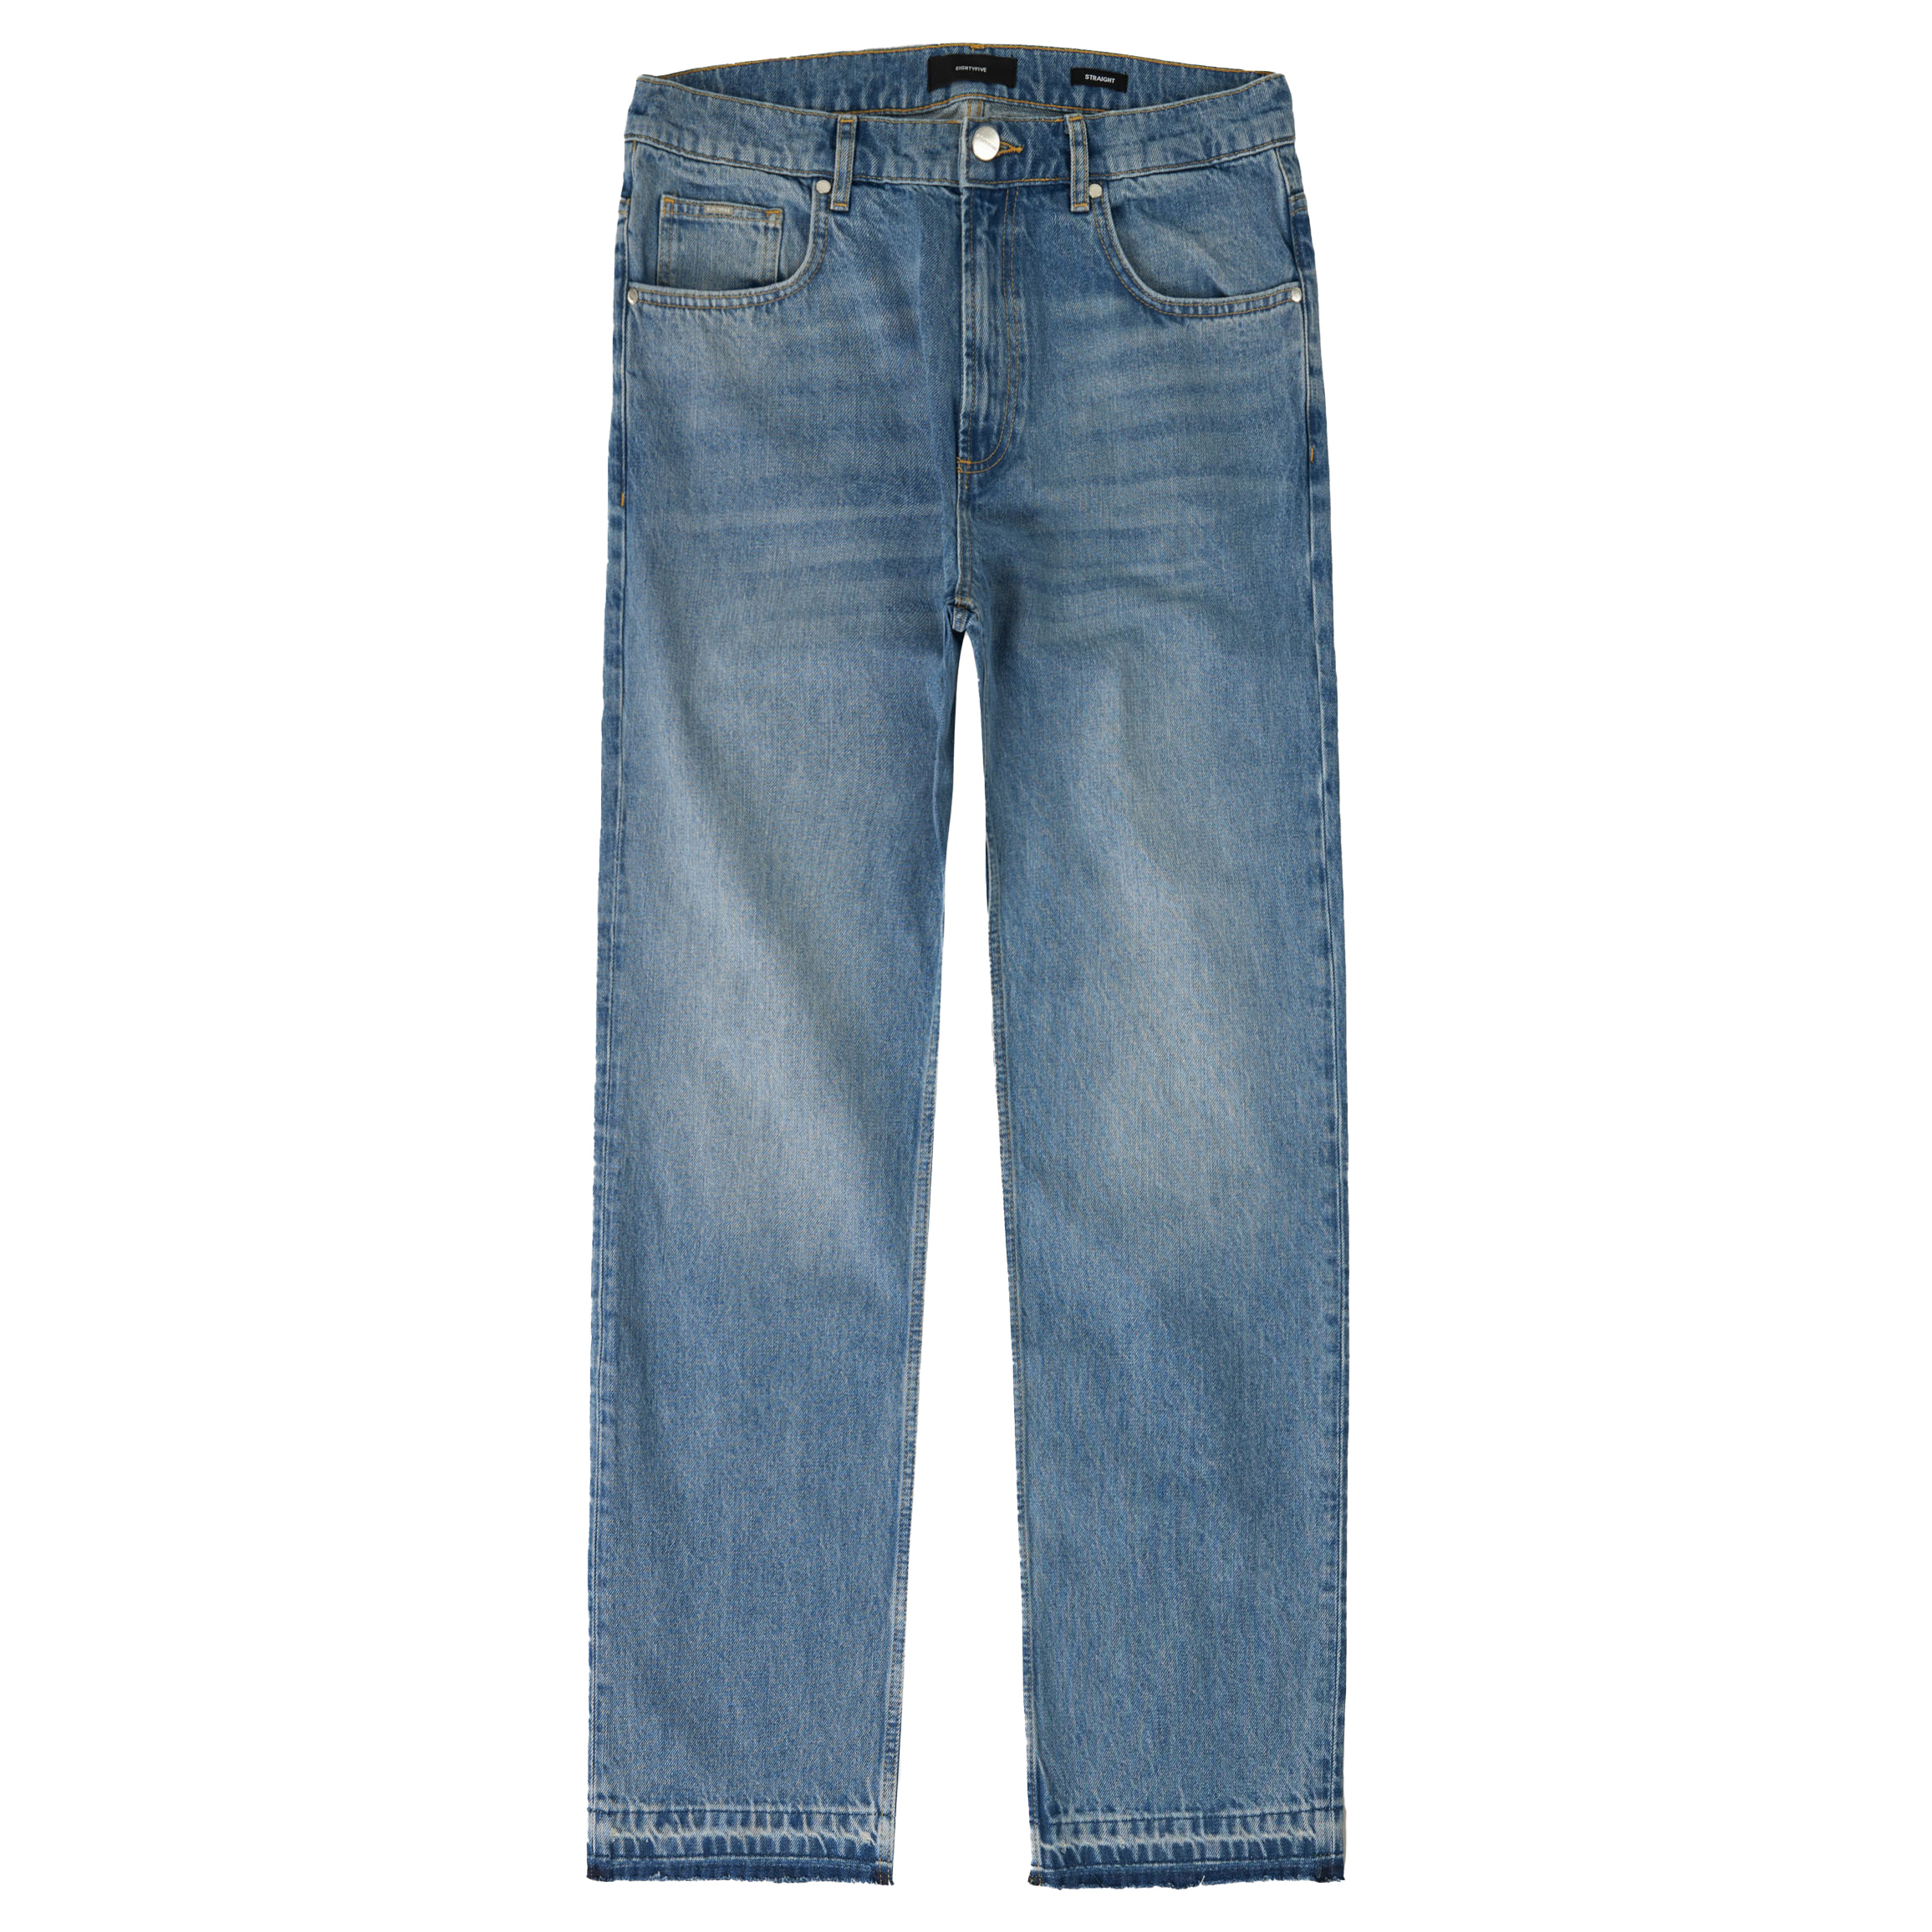 Get the EightyFive Open Hem Jeans! | KICKZ